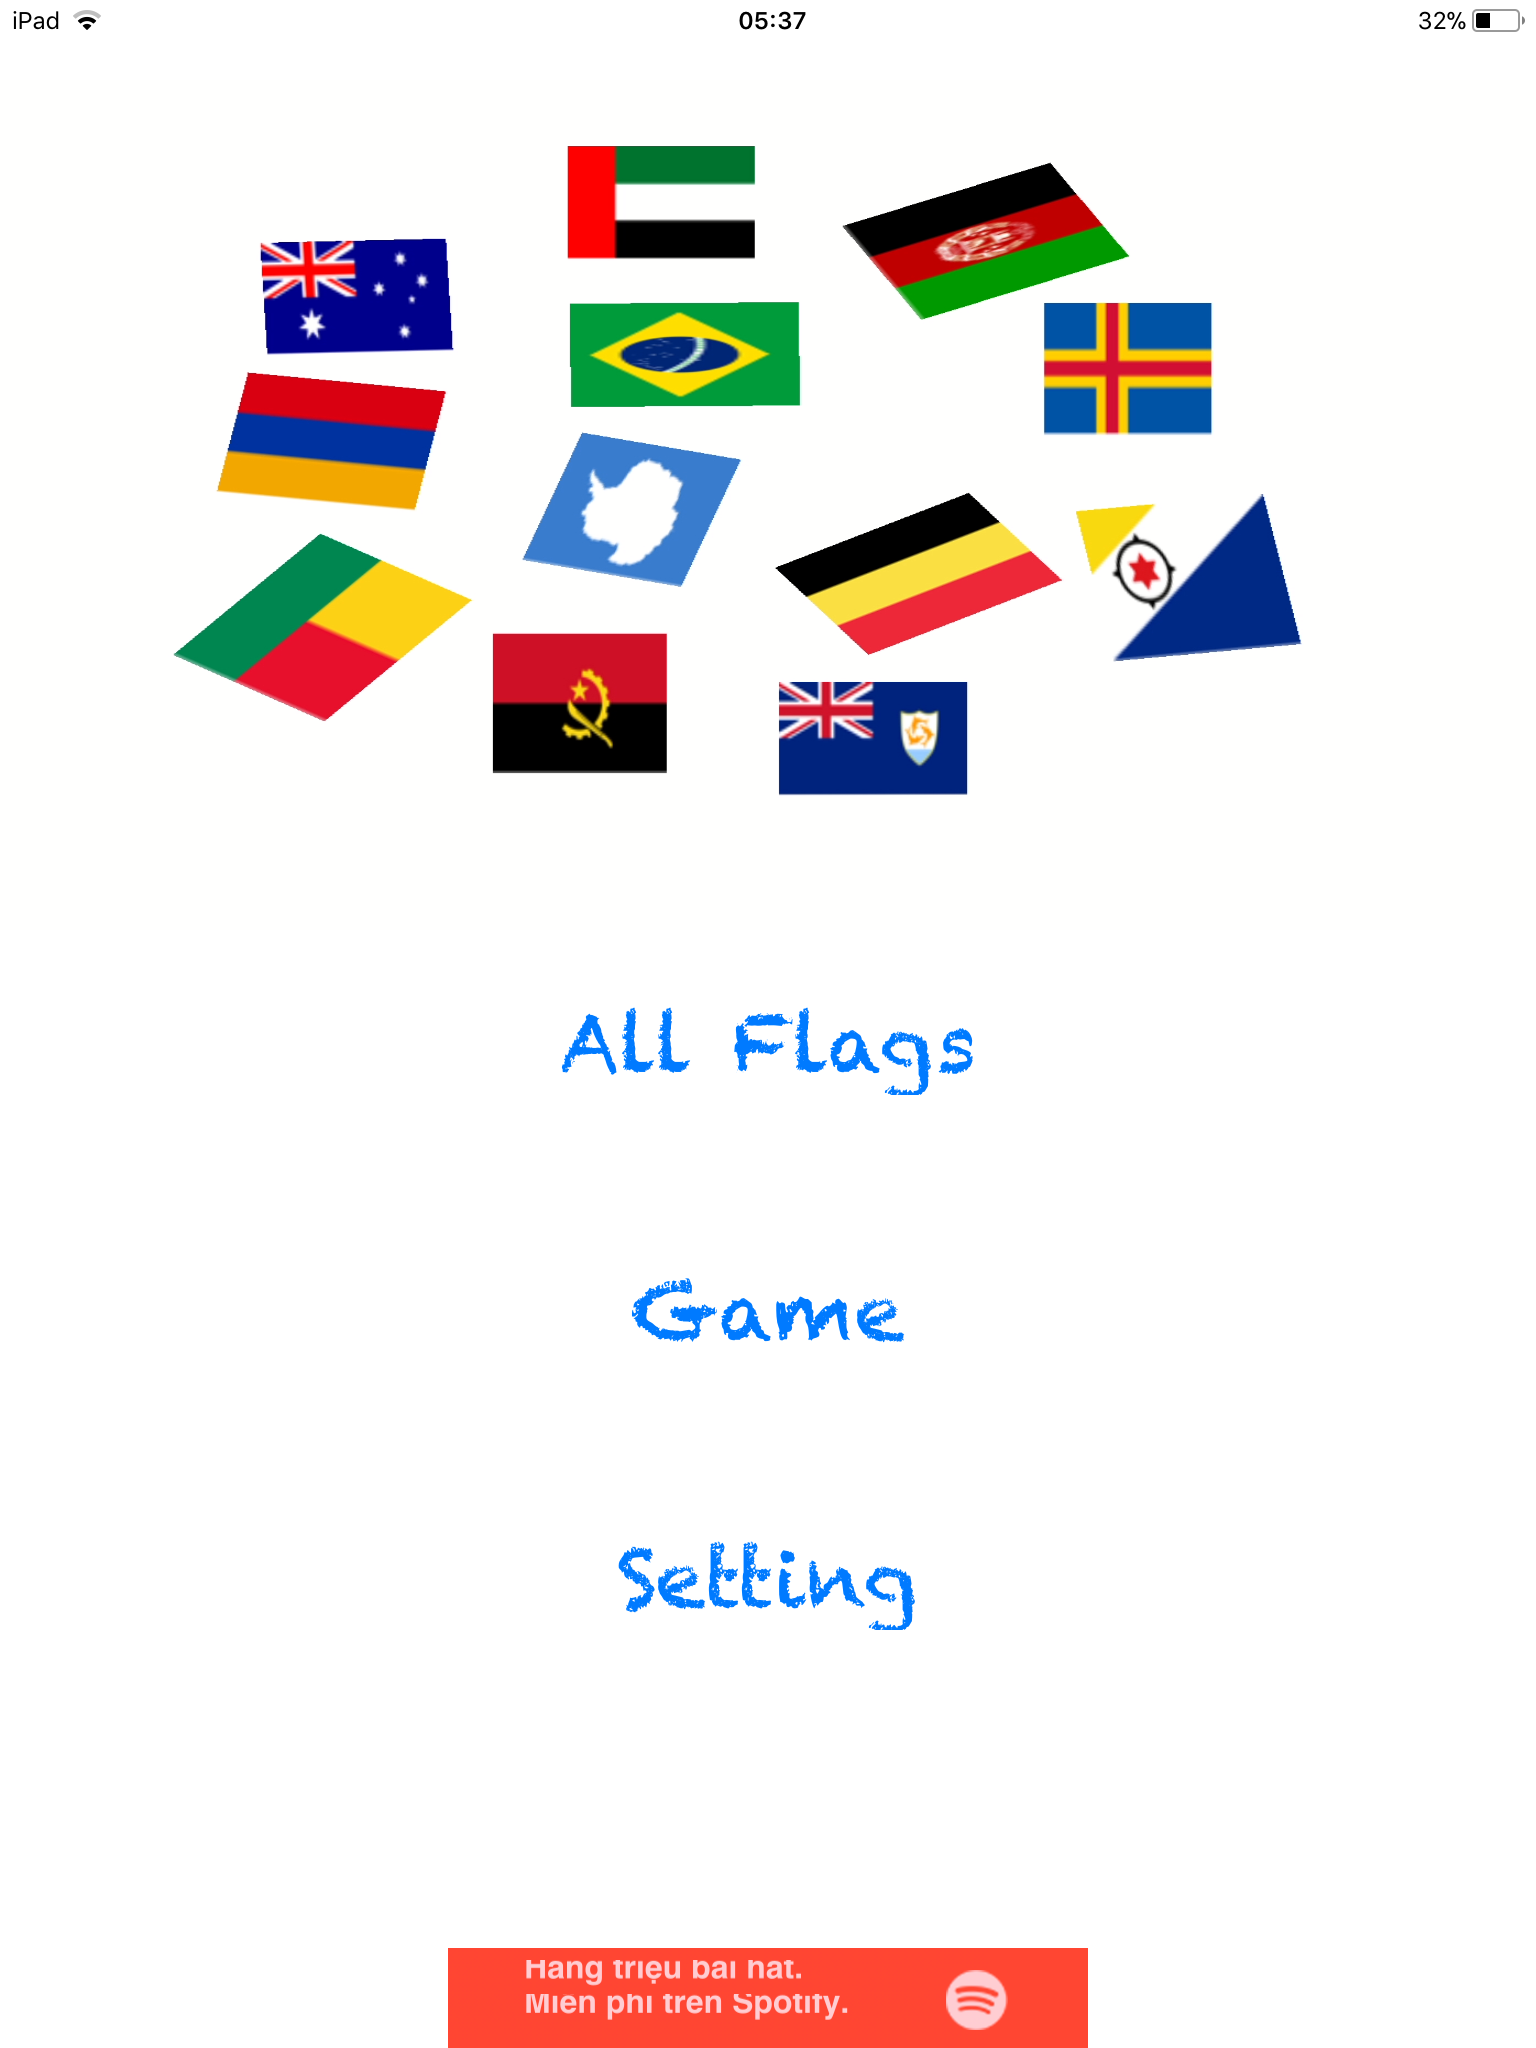 Ứng dụng học cờ quốc gia cung cấp cho bạn những kiến thức về lịch sử và ý nghĩa của bộ quốc kỳ của chúng ta. Nhấn vào hình ảnh để khám phá những tính năng học tập độc đáo mà ứng dụng này mang lại cho bạn.